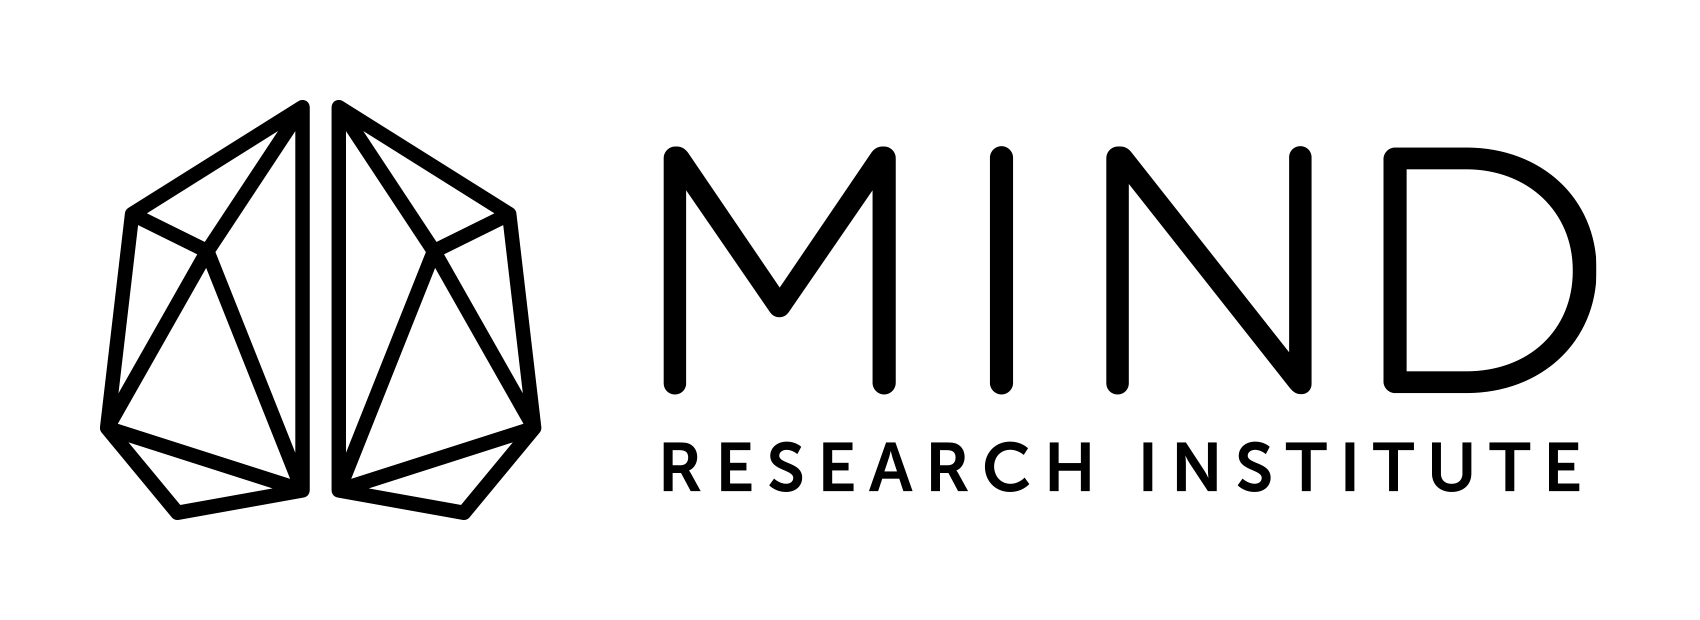 MIND-logo-2018-BLACK-1